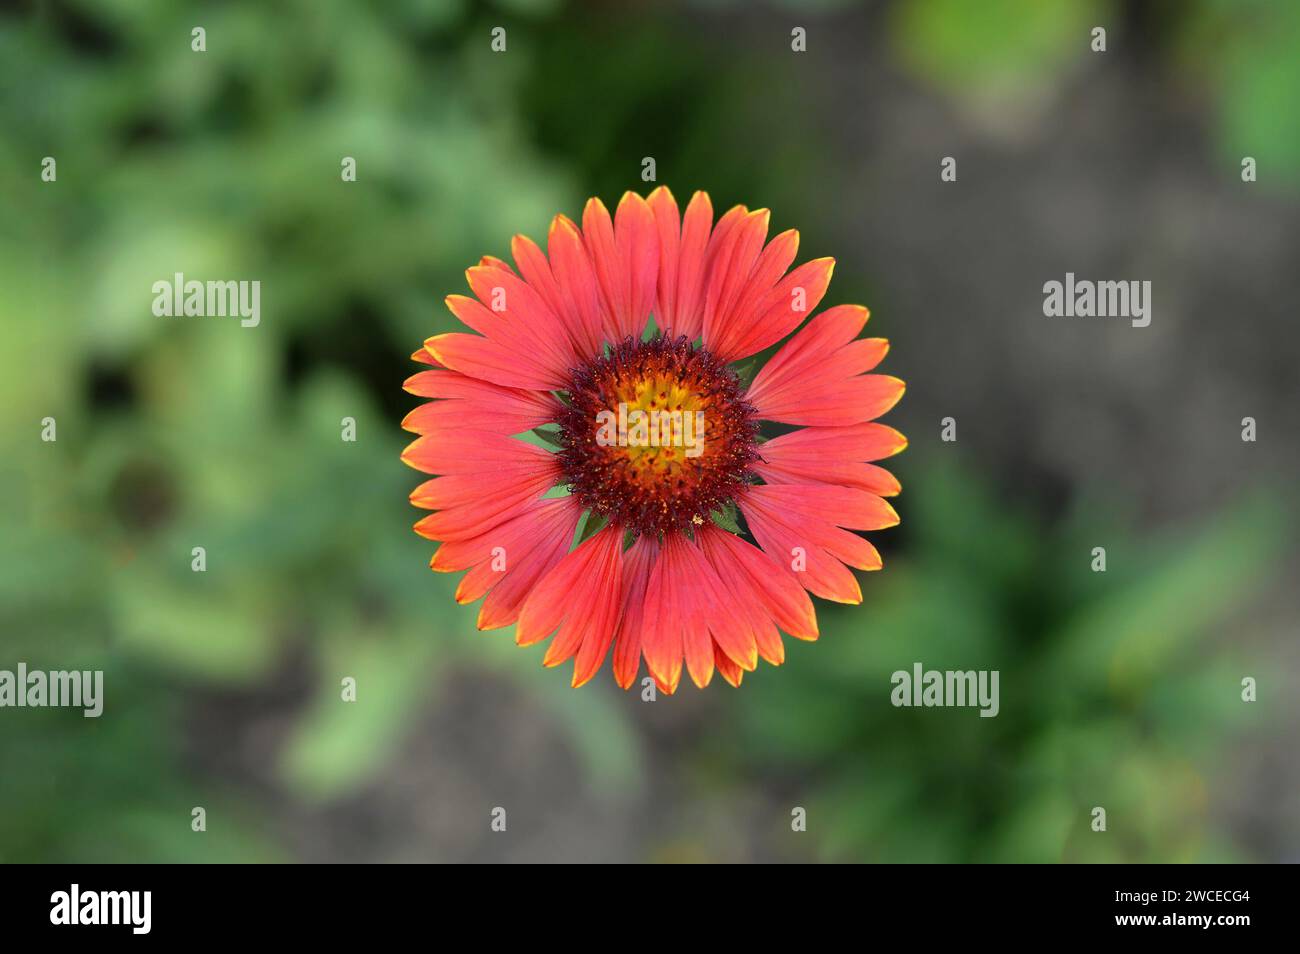 Gaillardia burgundy flower, macro image, top view Stock Photo